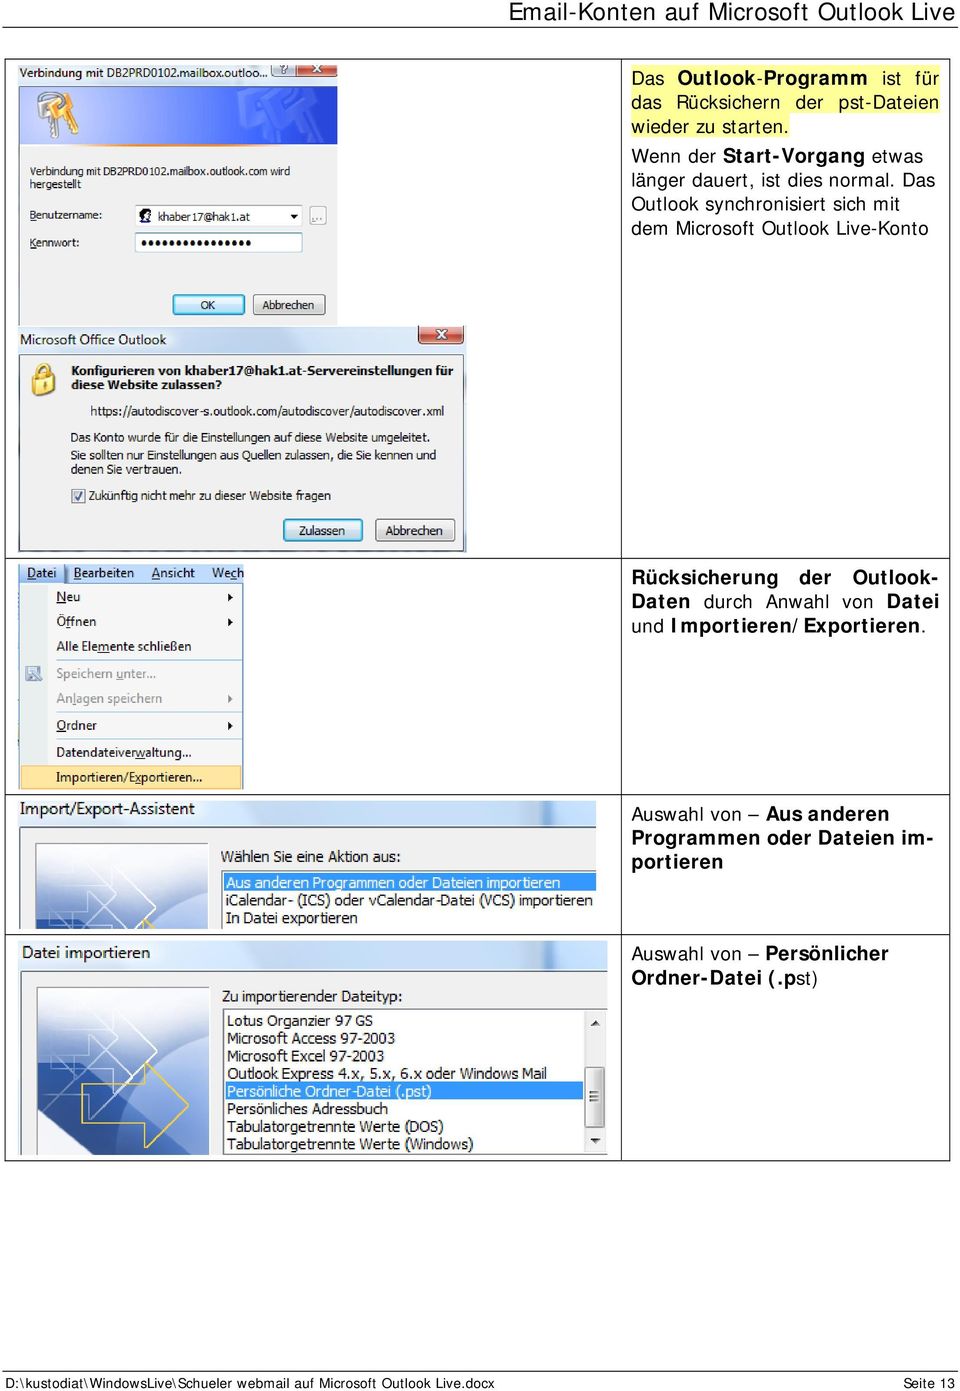 Das Outlook synchronisiert sich mit dem Microsoft Outlook Live-Konto Rücksicherung der Outlook- Daten durch Anwahl von